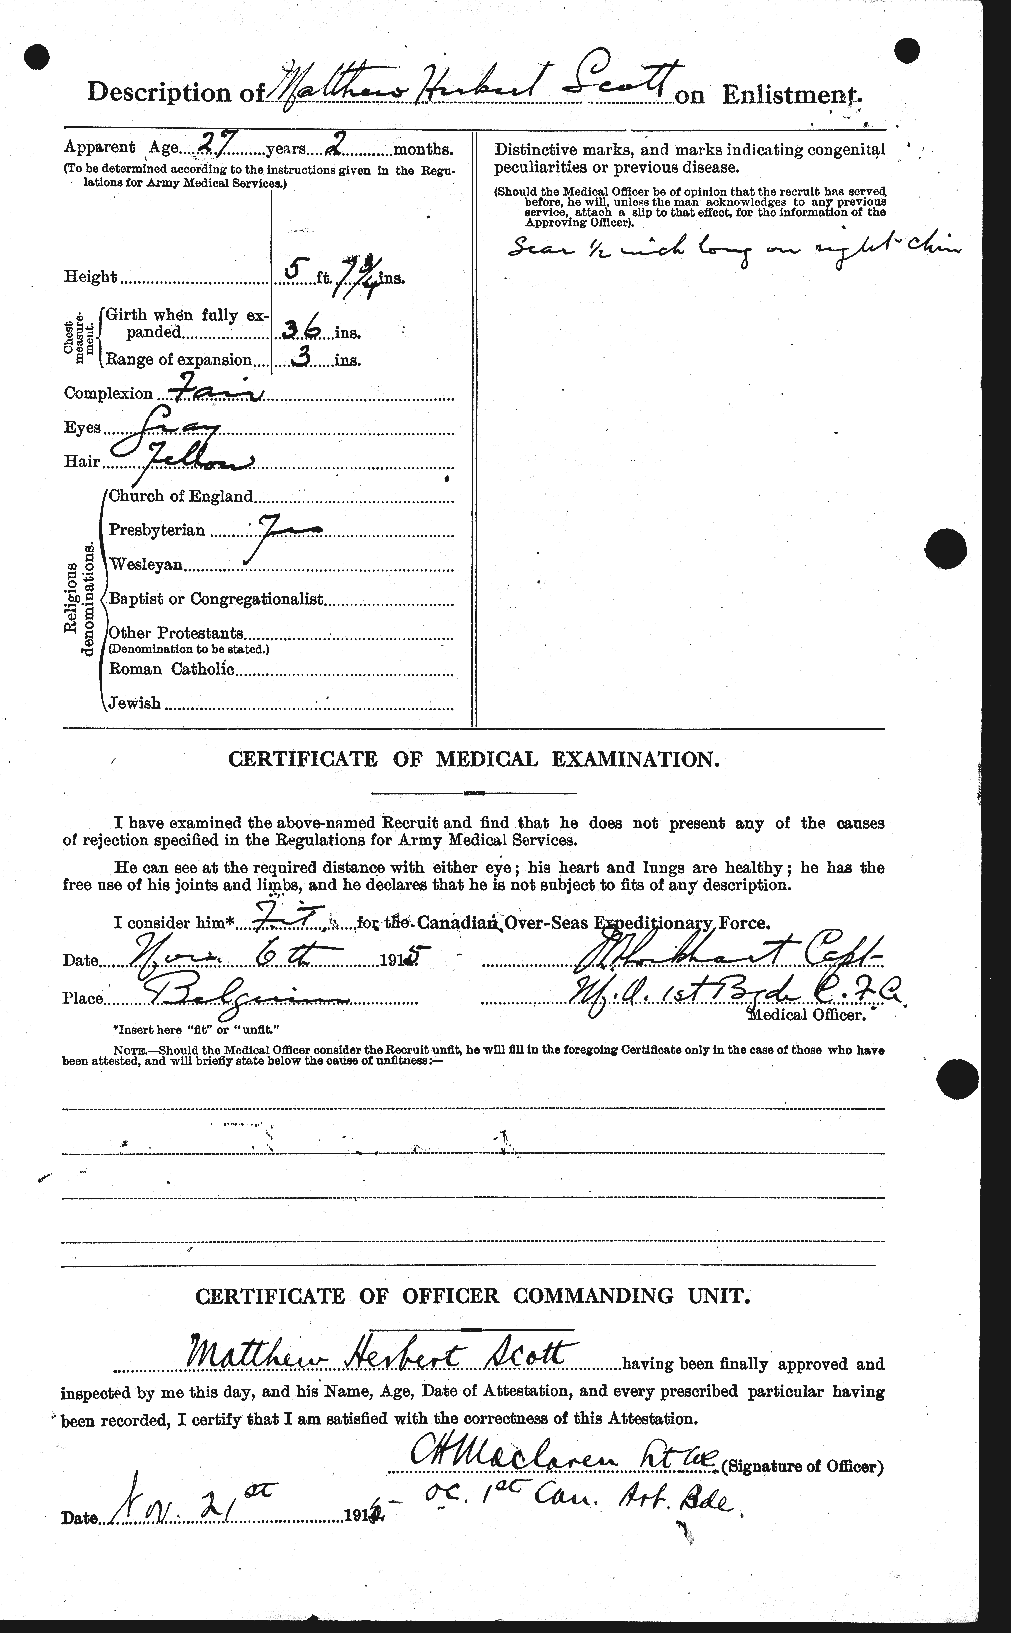 Dossiers du Personnel de la Première Guerre mondiale - CEC 083503b